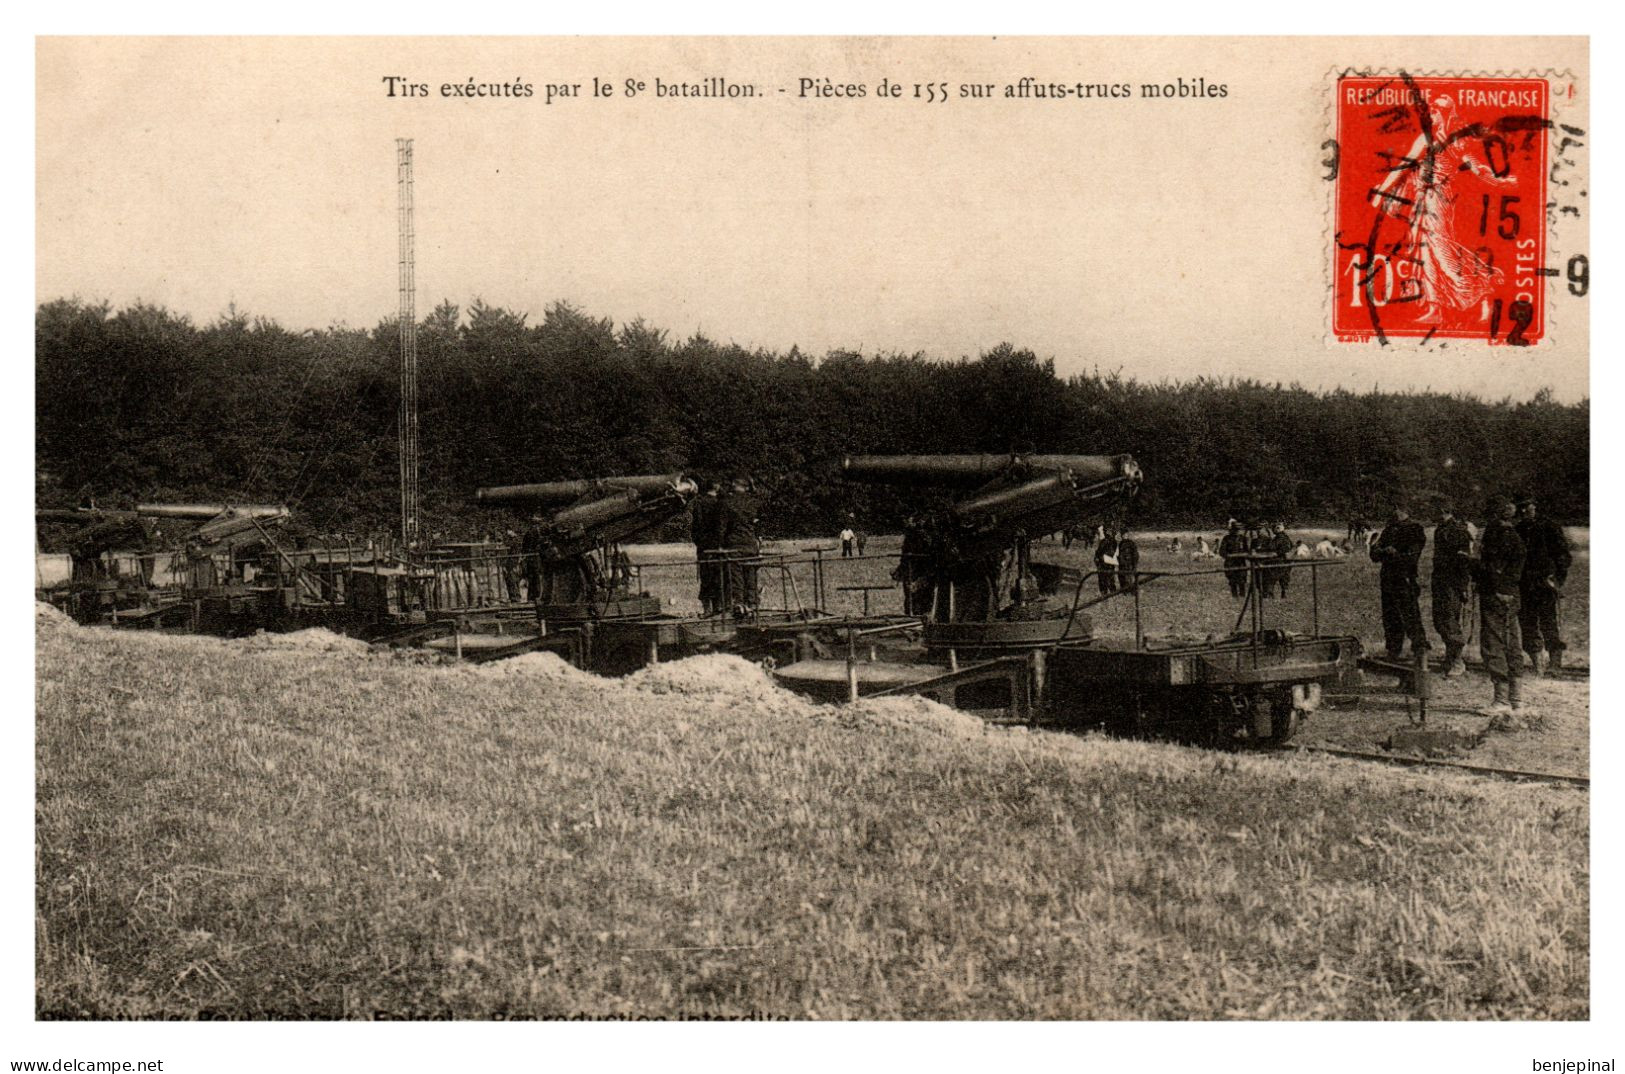 Epinal - Tirs Exécutés Par Le 8° Régiment Bataillon D'Artillerie - Pièces De 155 Sur Affuts-truc Mobiles - Epinal